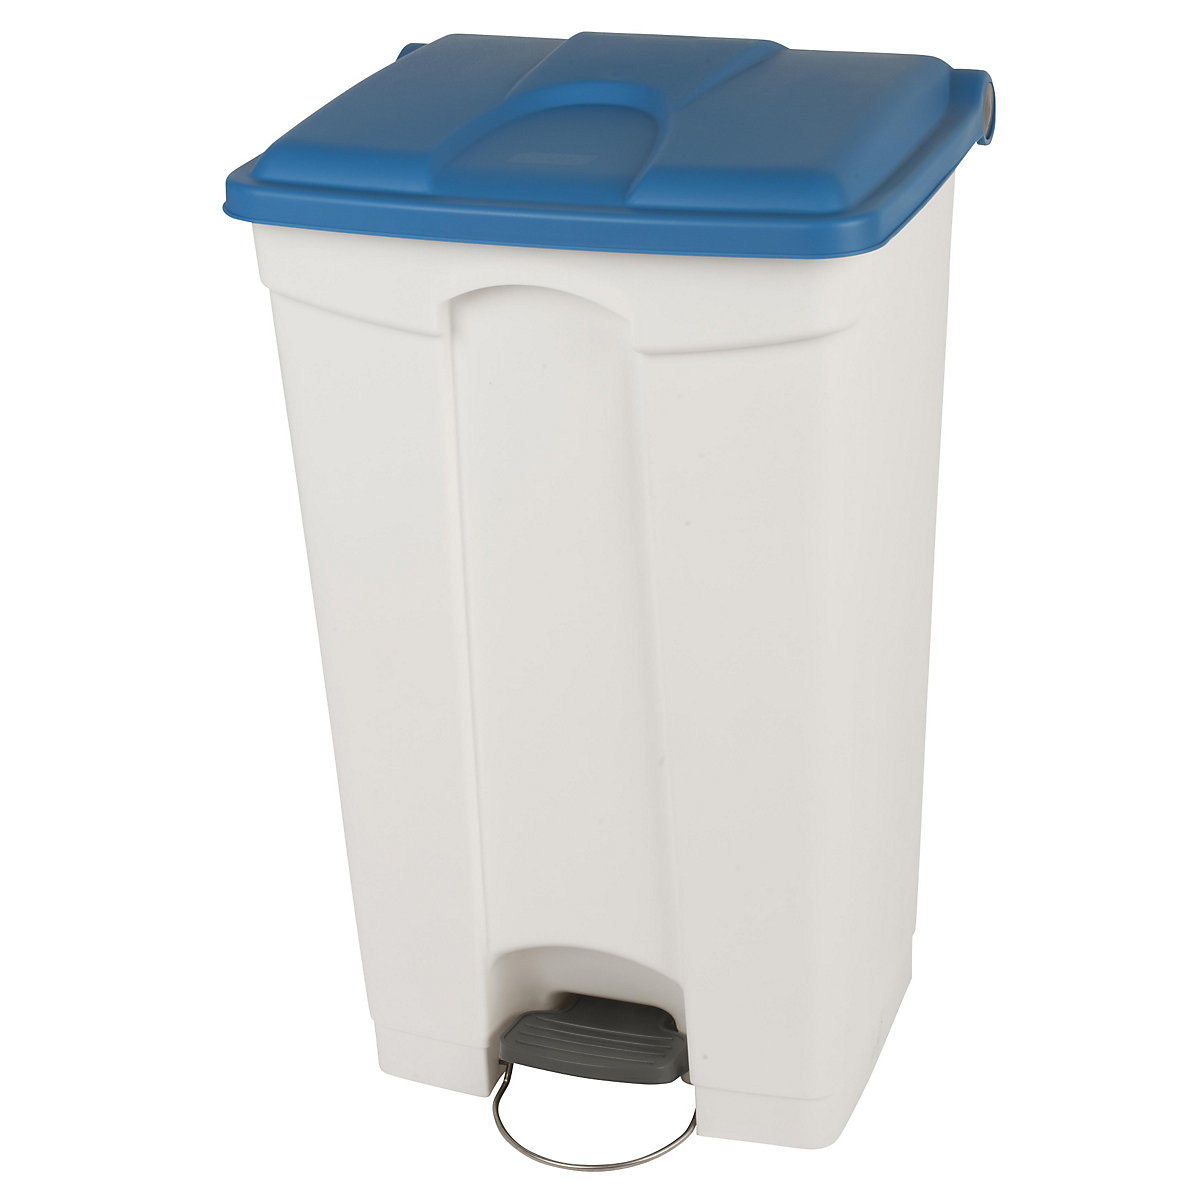 EUROKRAFTbasic – Nádoba na odpad s pedálem, objem 90 l, š x v x h 505 x 790 x 410 mm, bílá, modré víko